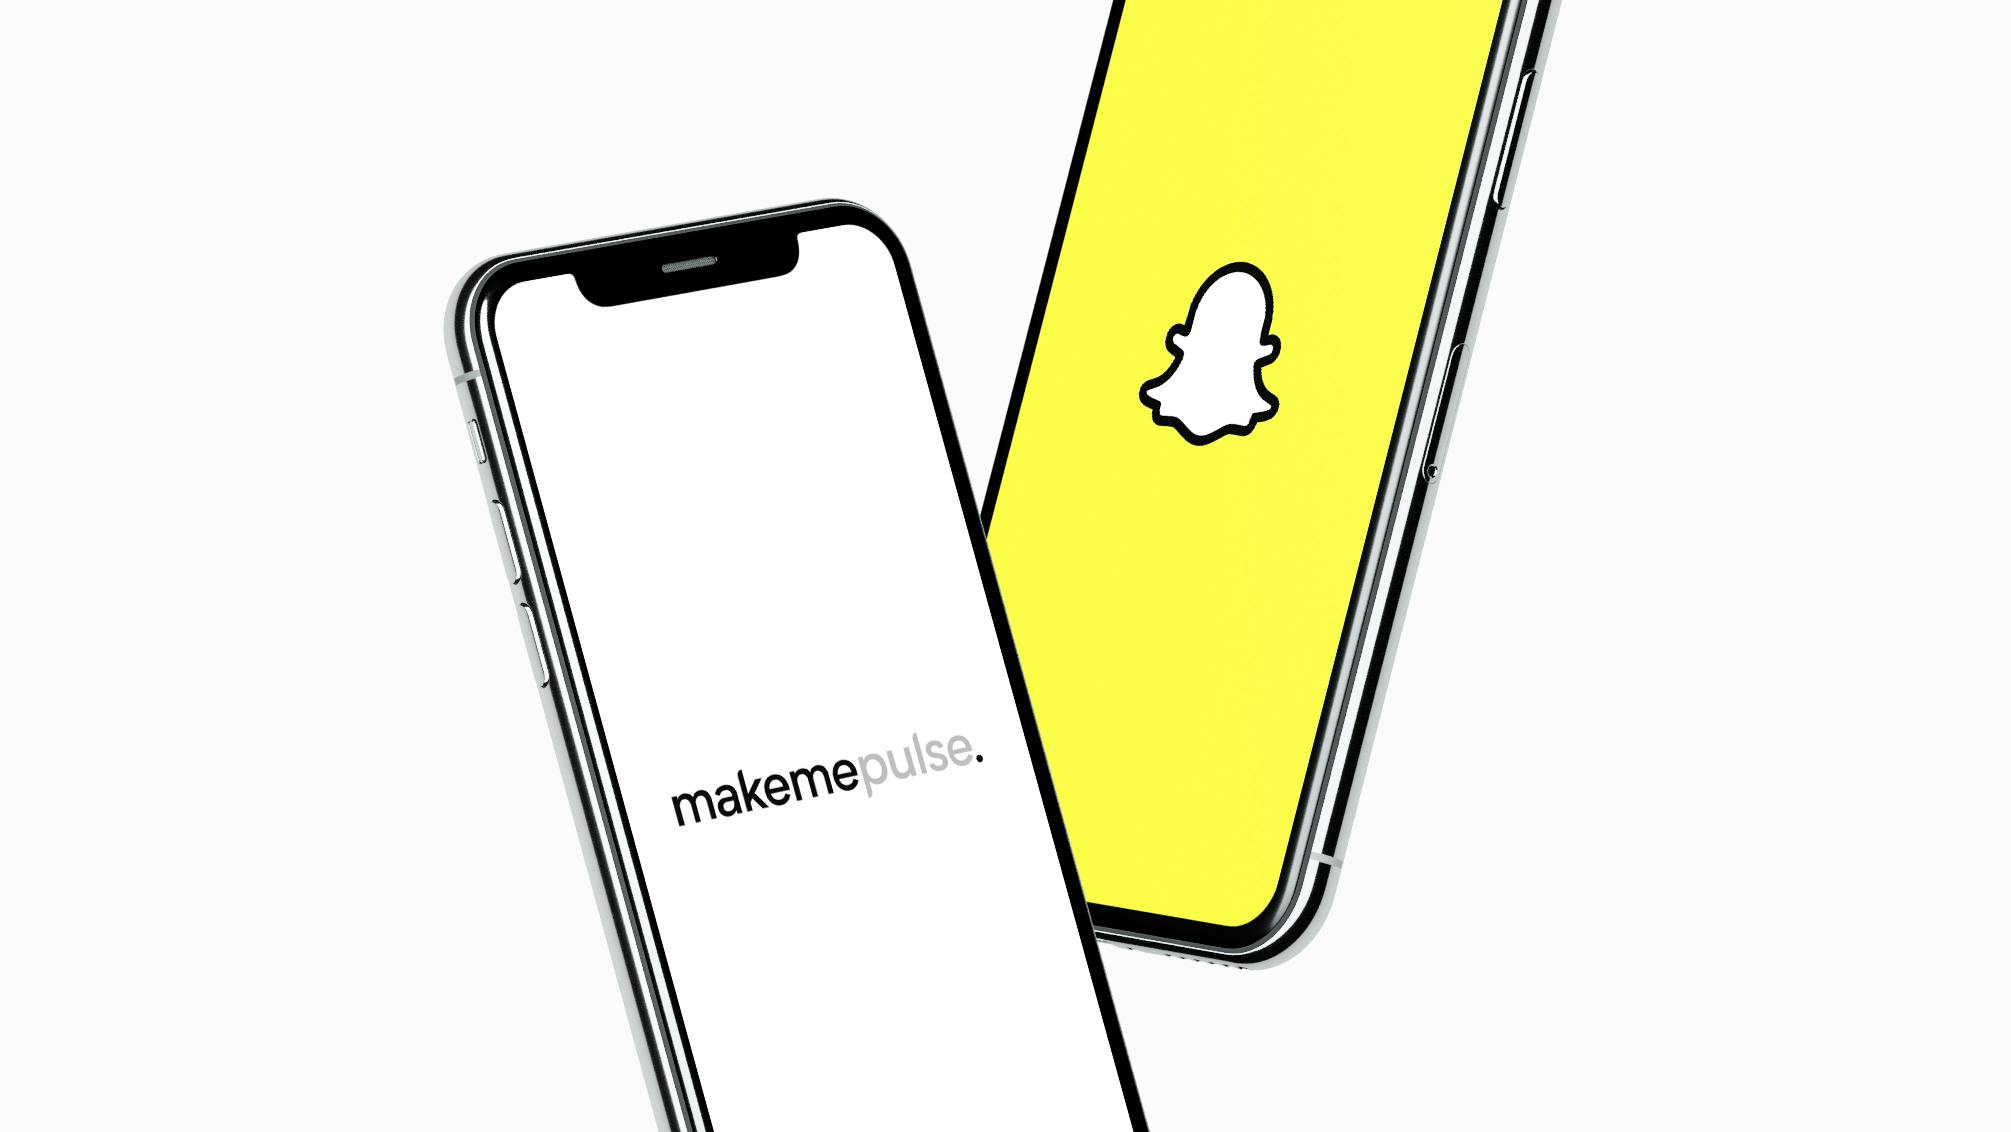 Snapchat lenses - Makemepulse